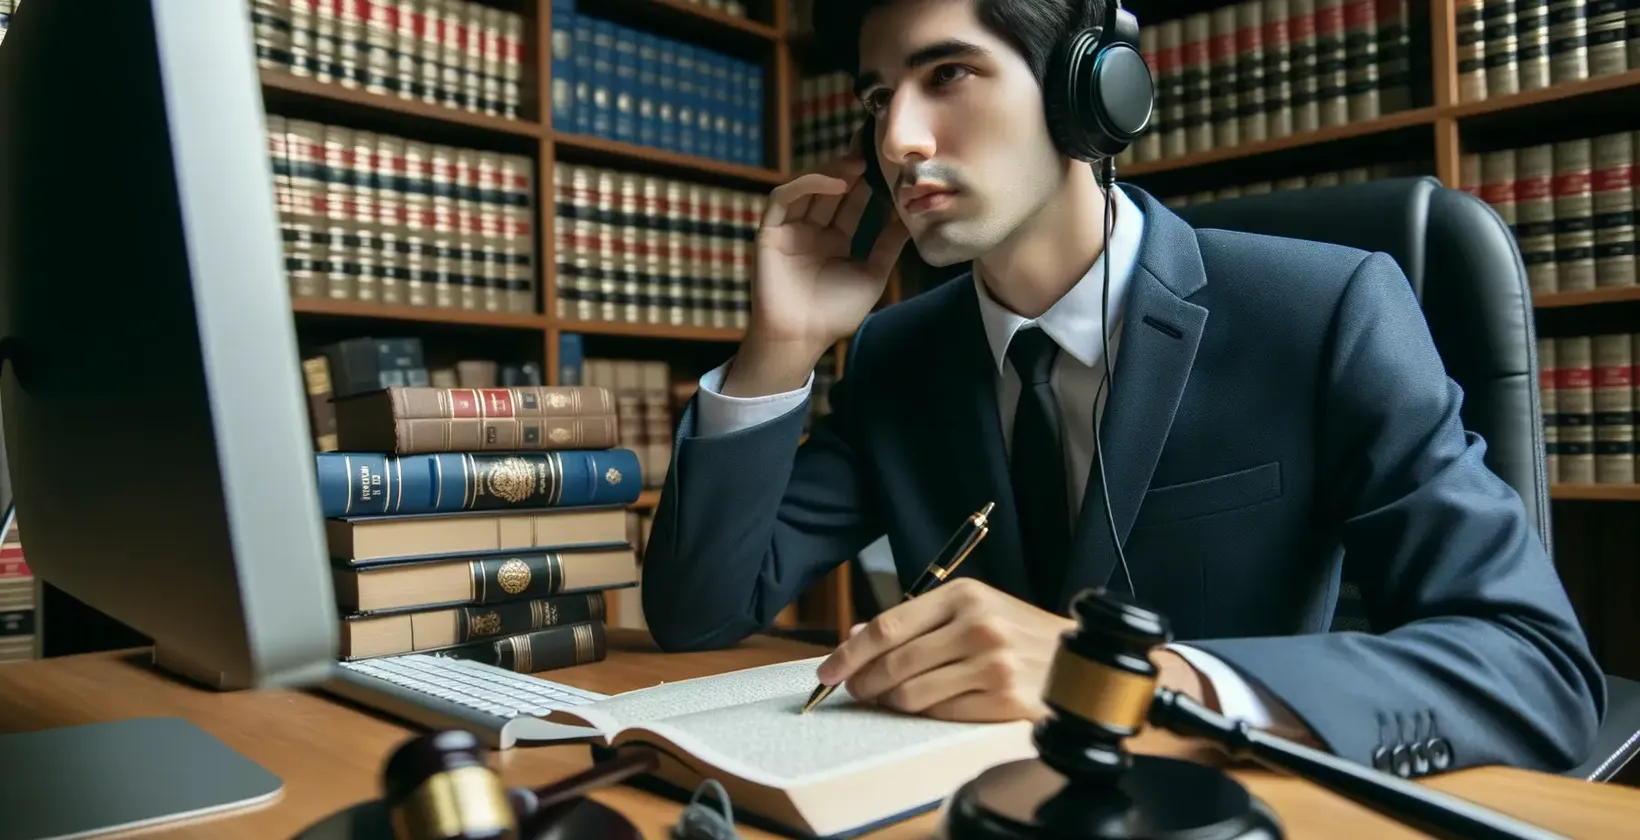 Juridiske transskriptionstjenester præsenteret af en professionel med hovedtelefoner i et juridisk bibliotek.